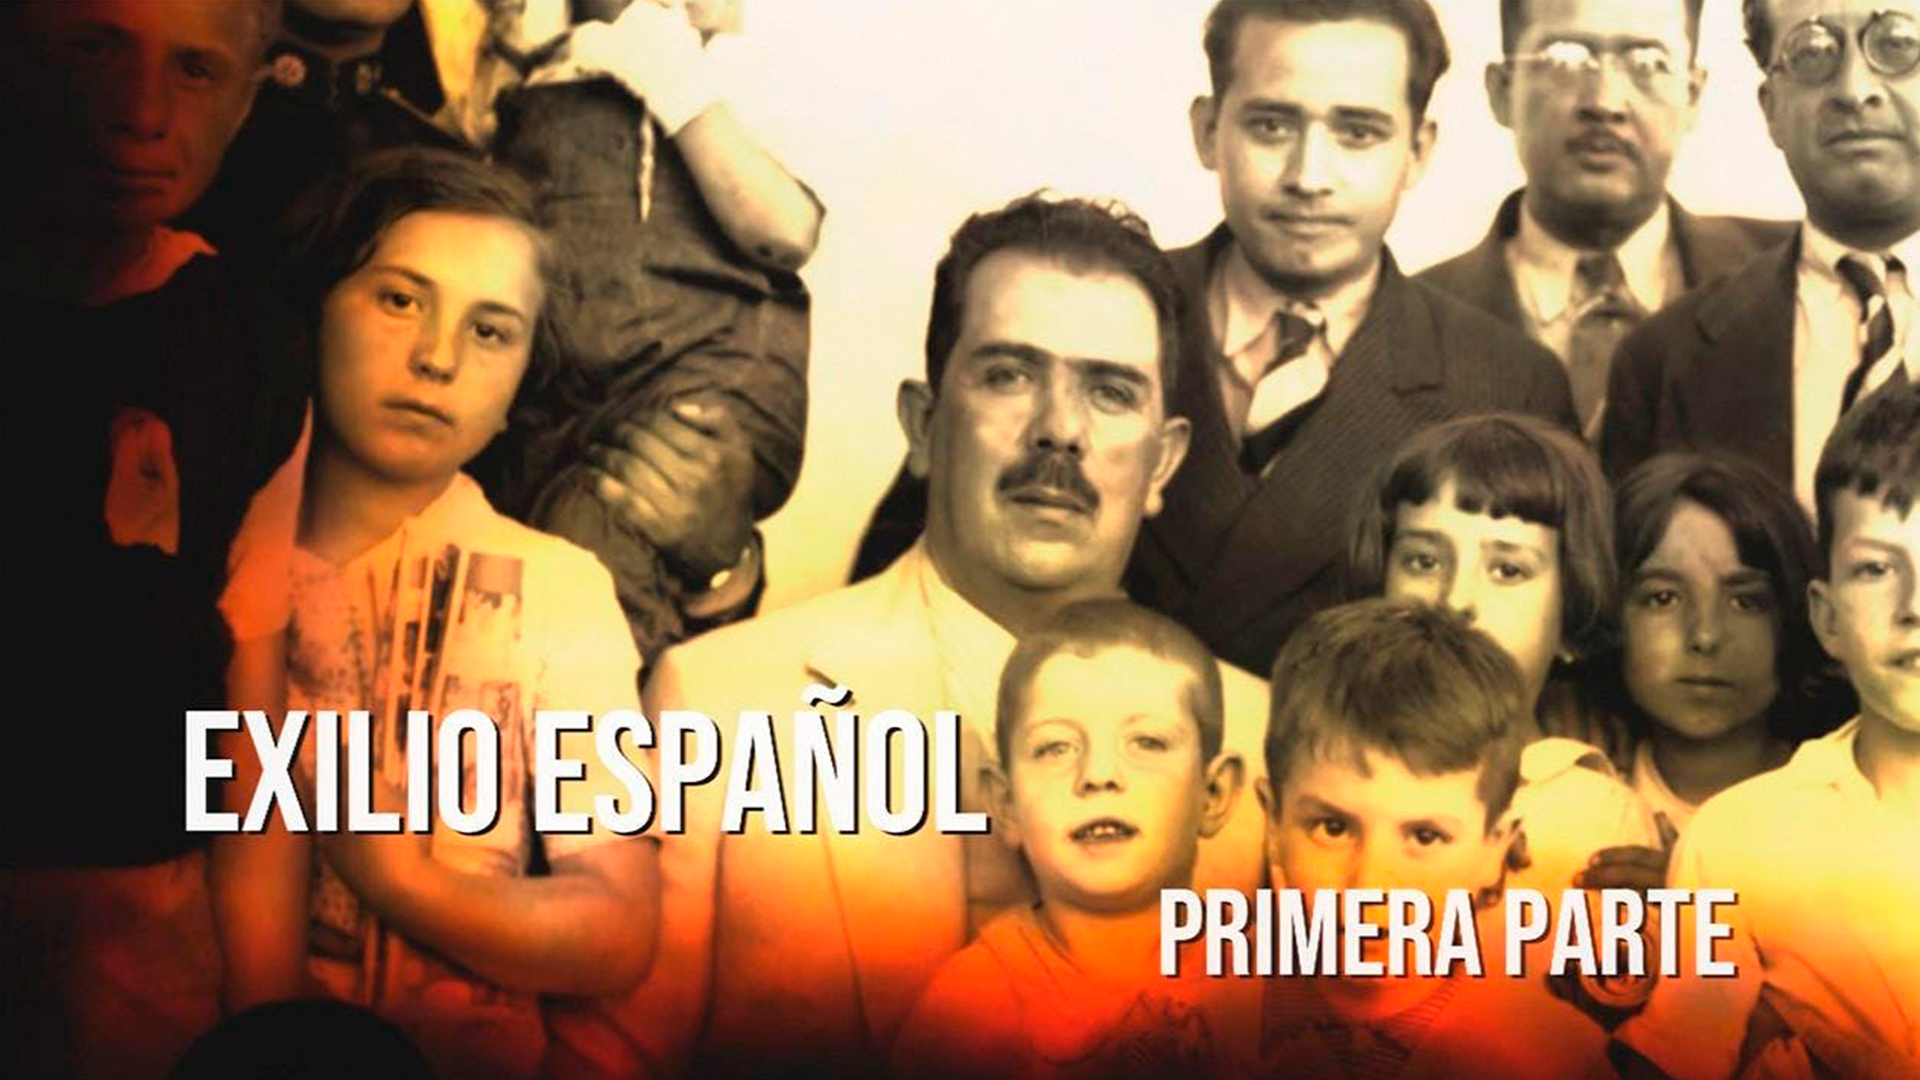 Exilio español. Primera parte